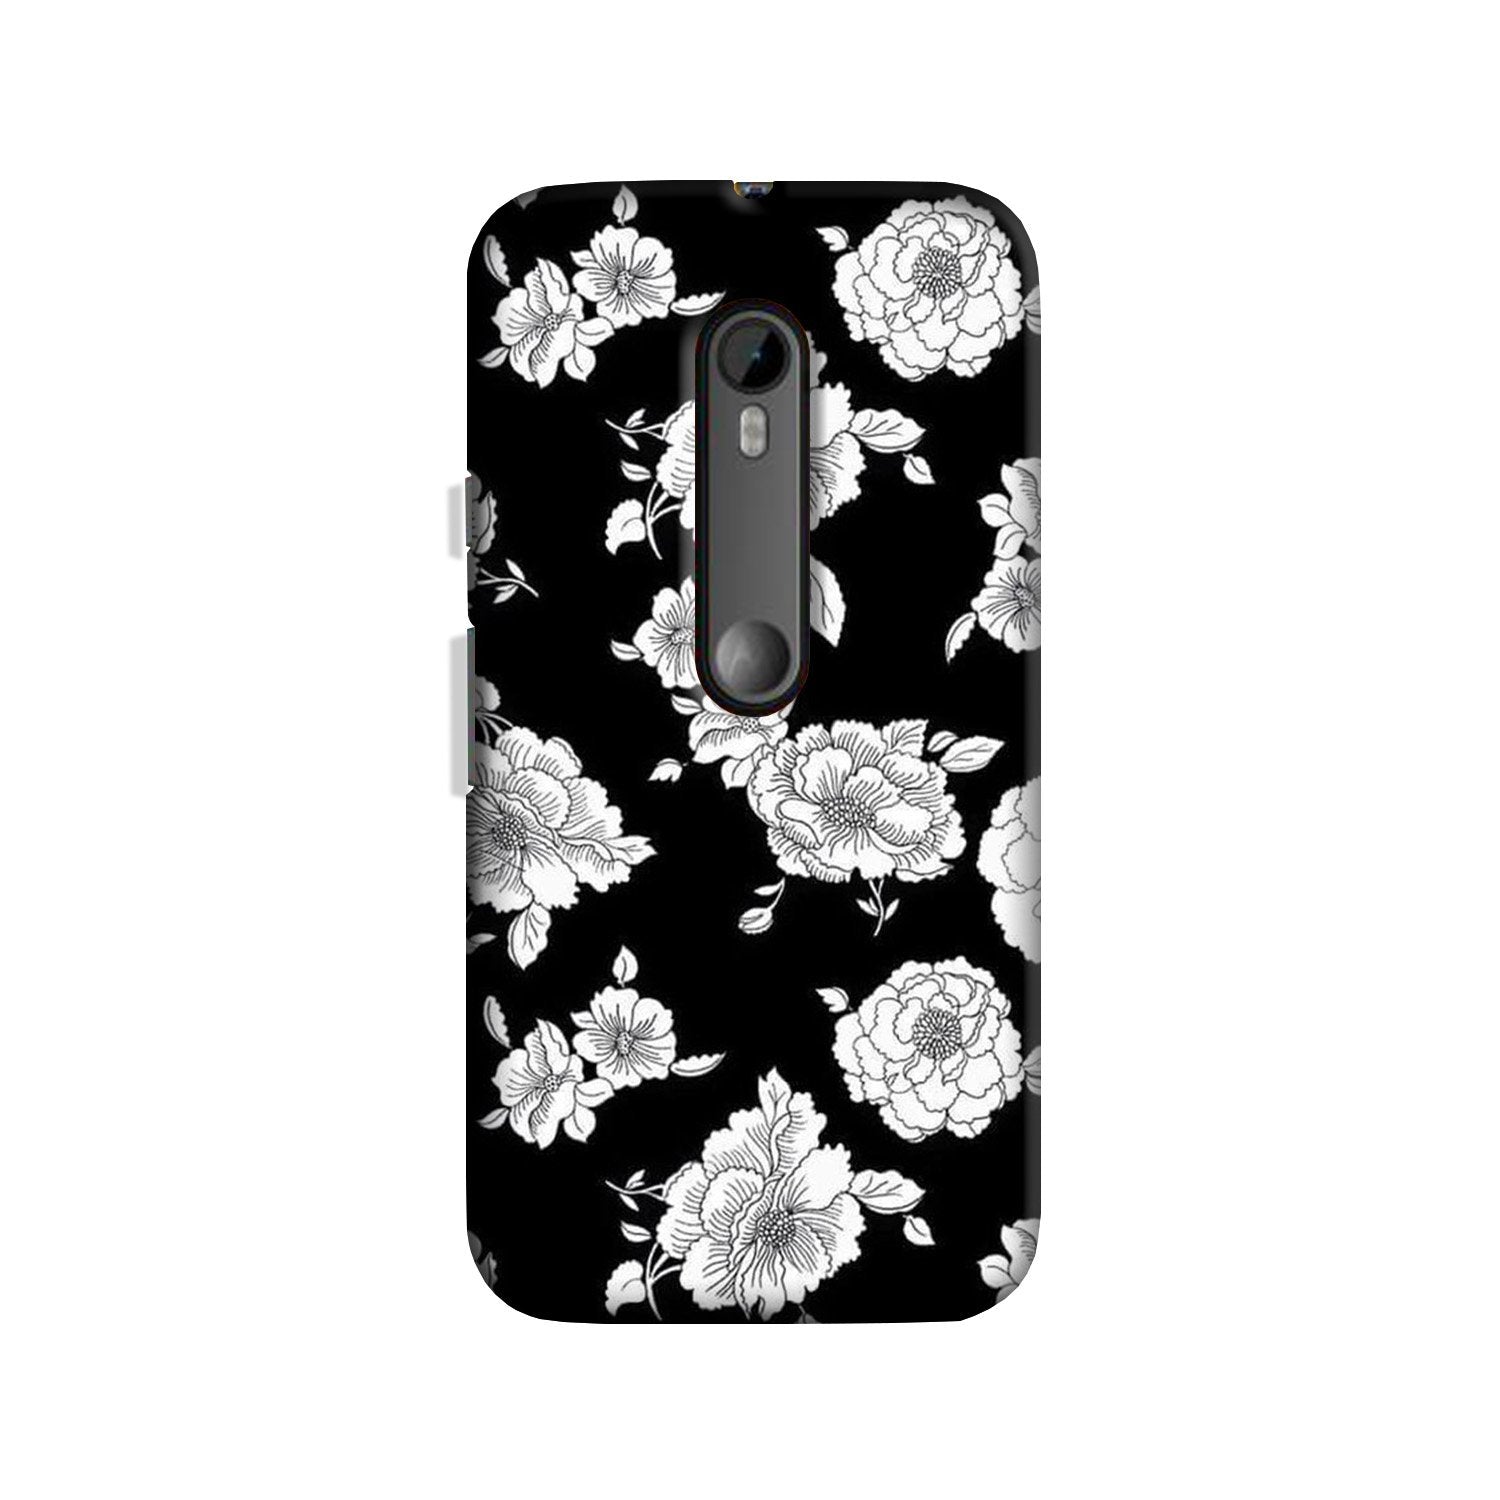 White flowers Black Background Case for Moto G3